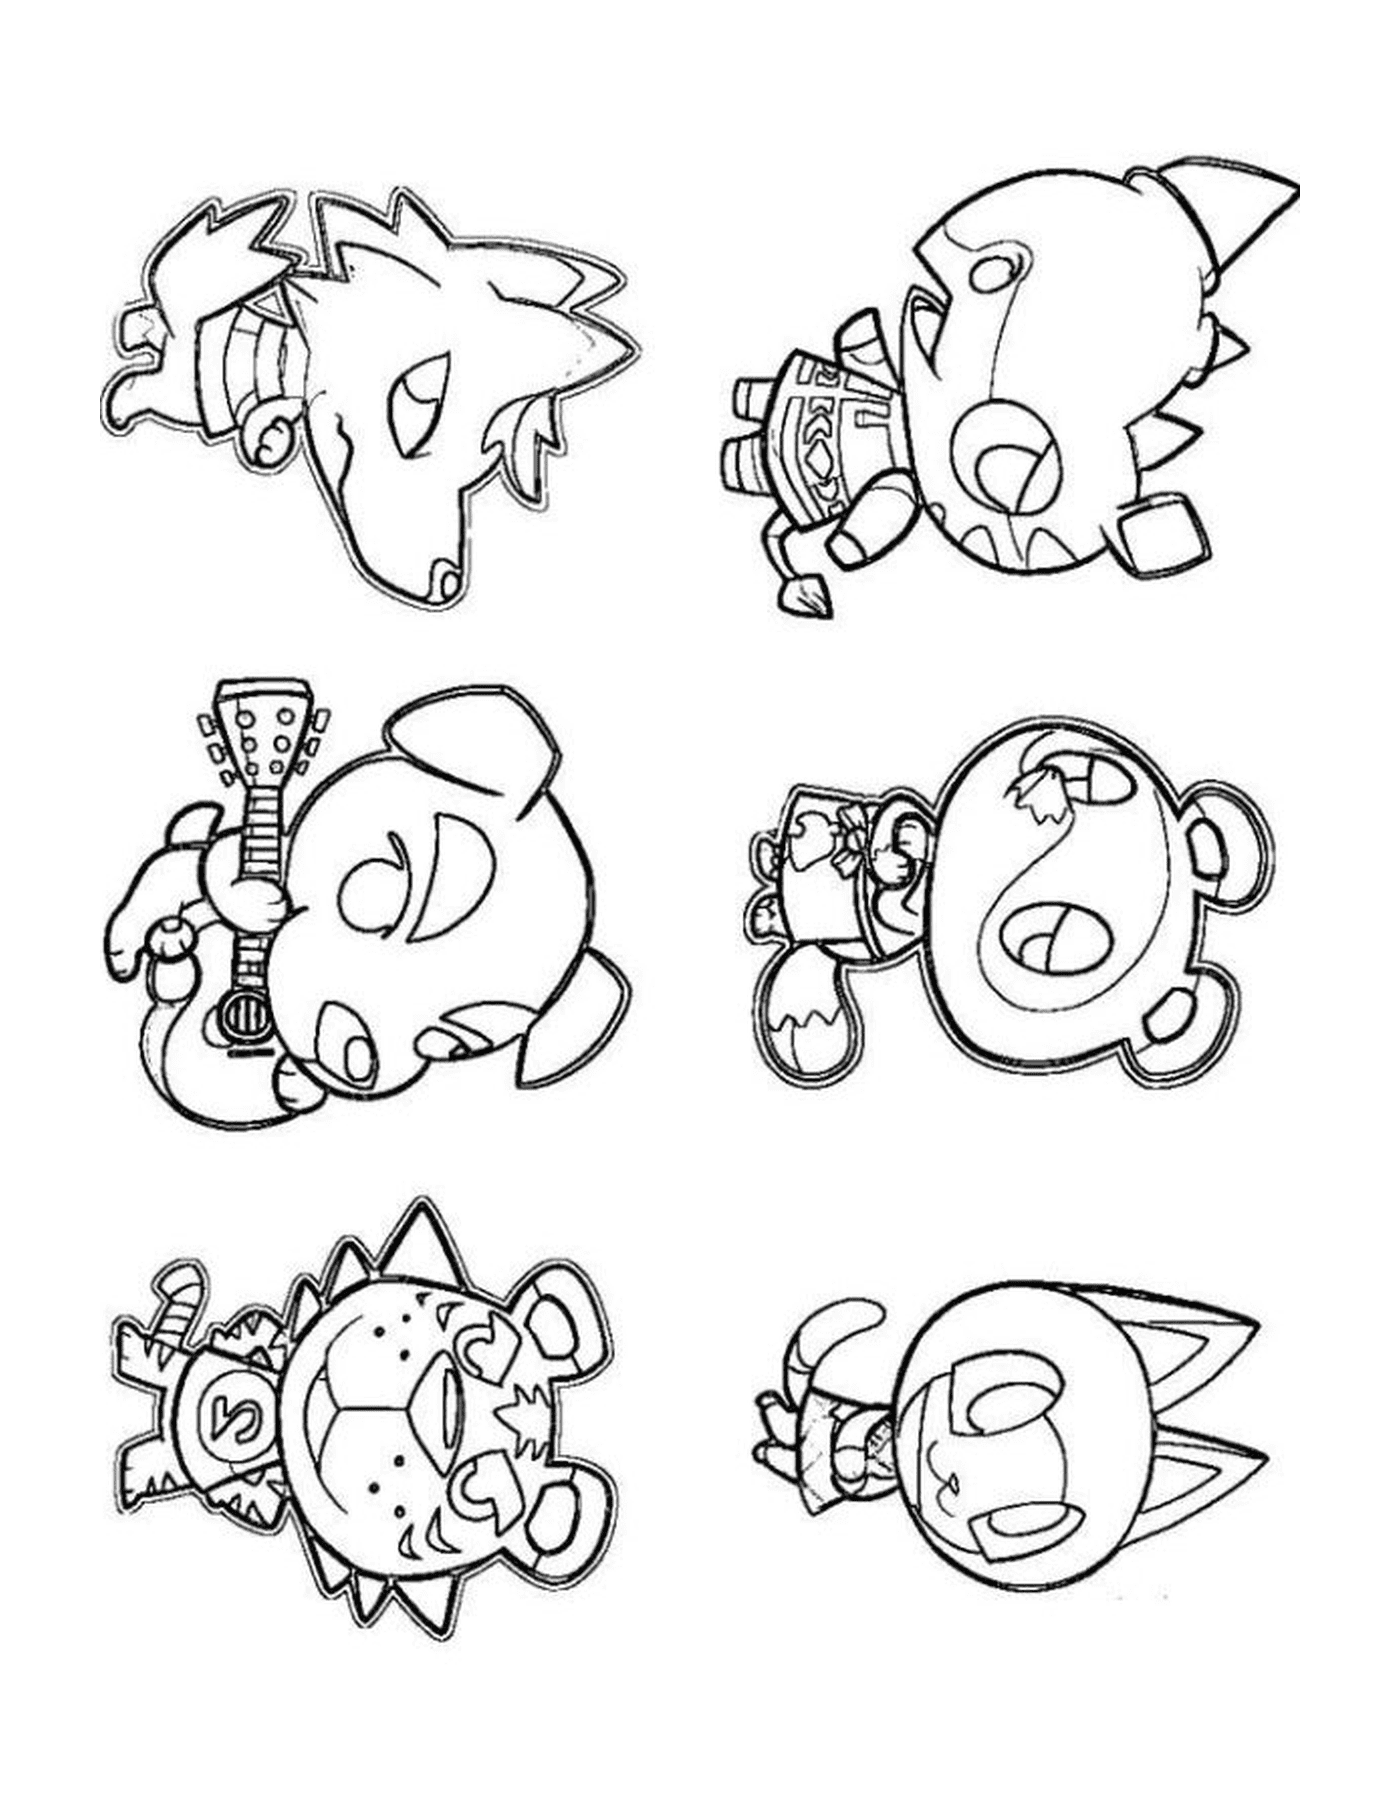   Animal Crossing 5, personnages de dessins animés en groupe 